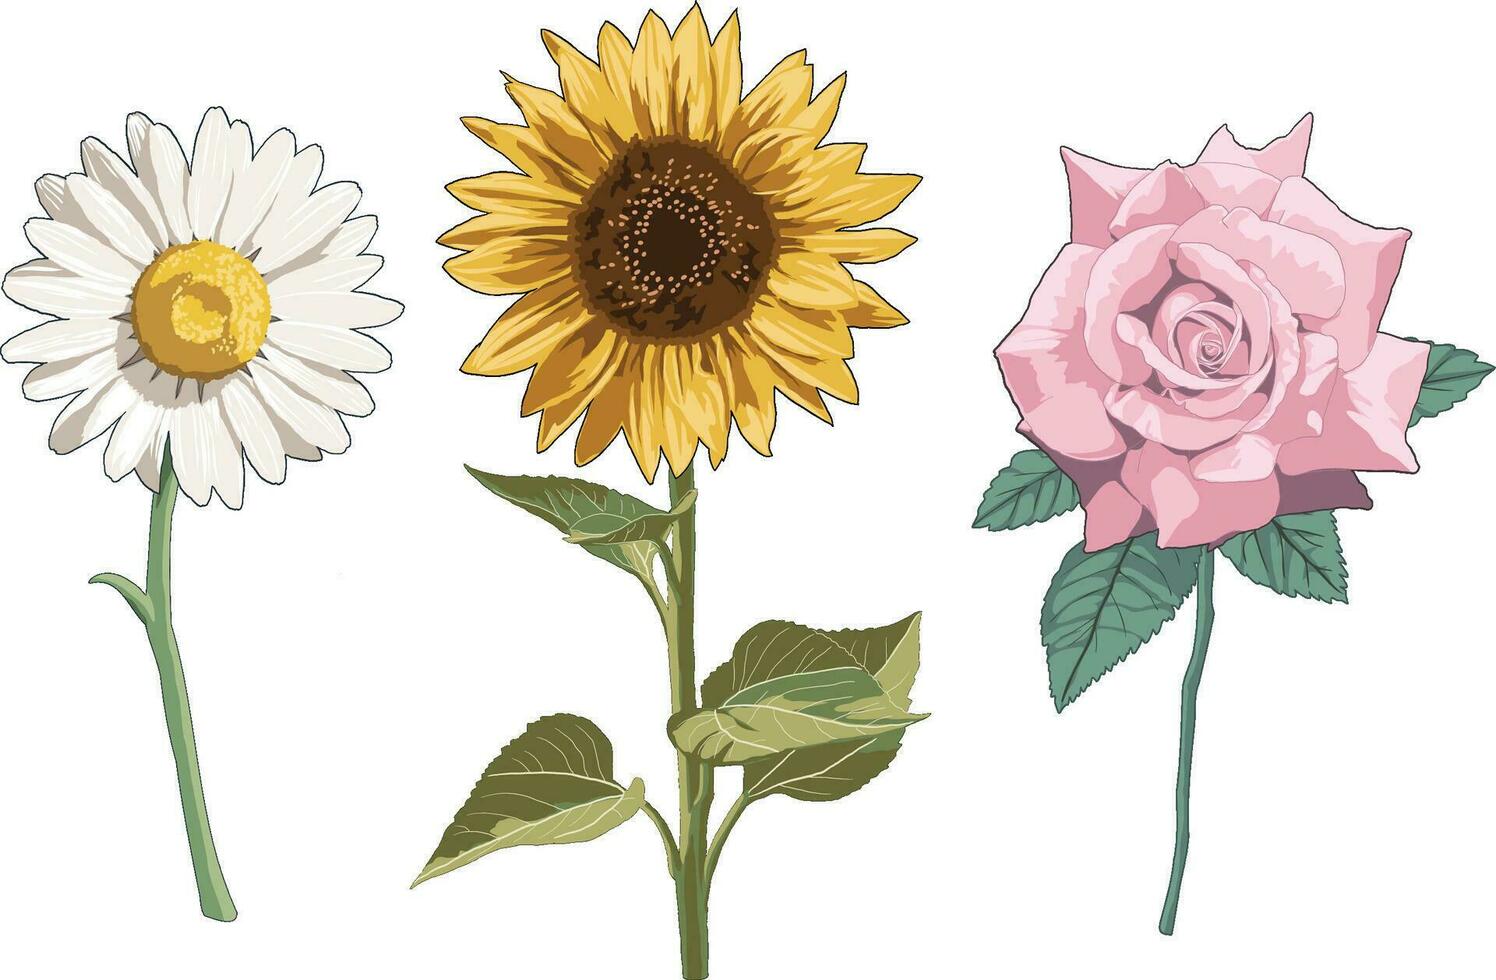 réaliste fleur botanique plante dessins illustration tournesol Marguerite et Rose vecteur